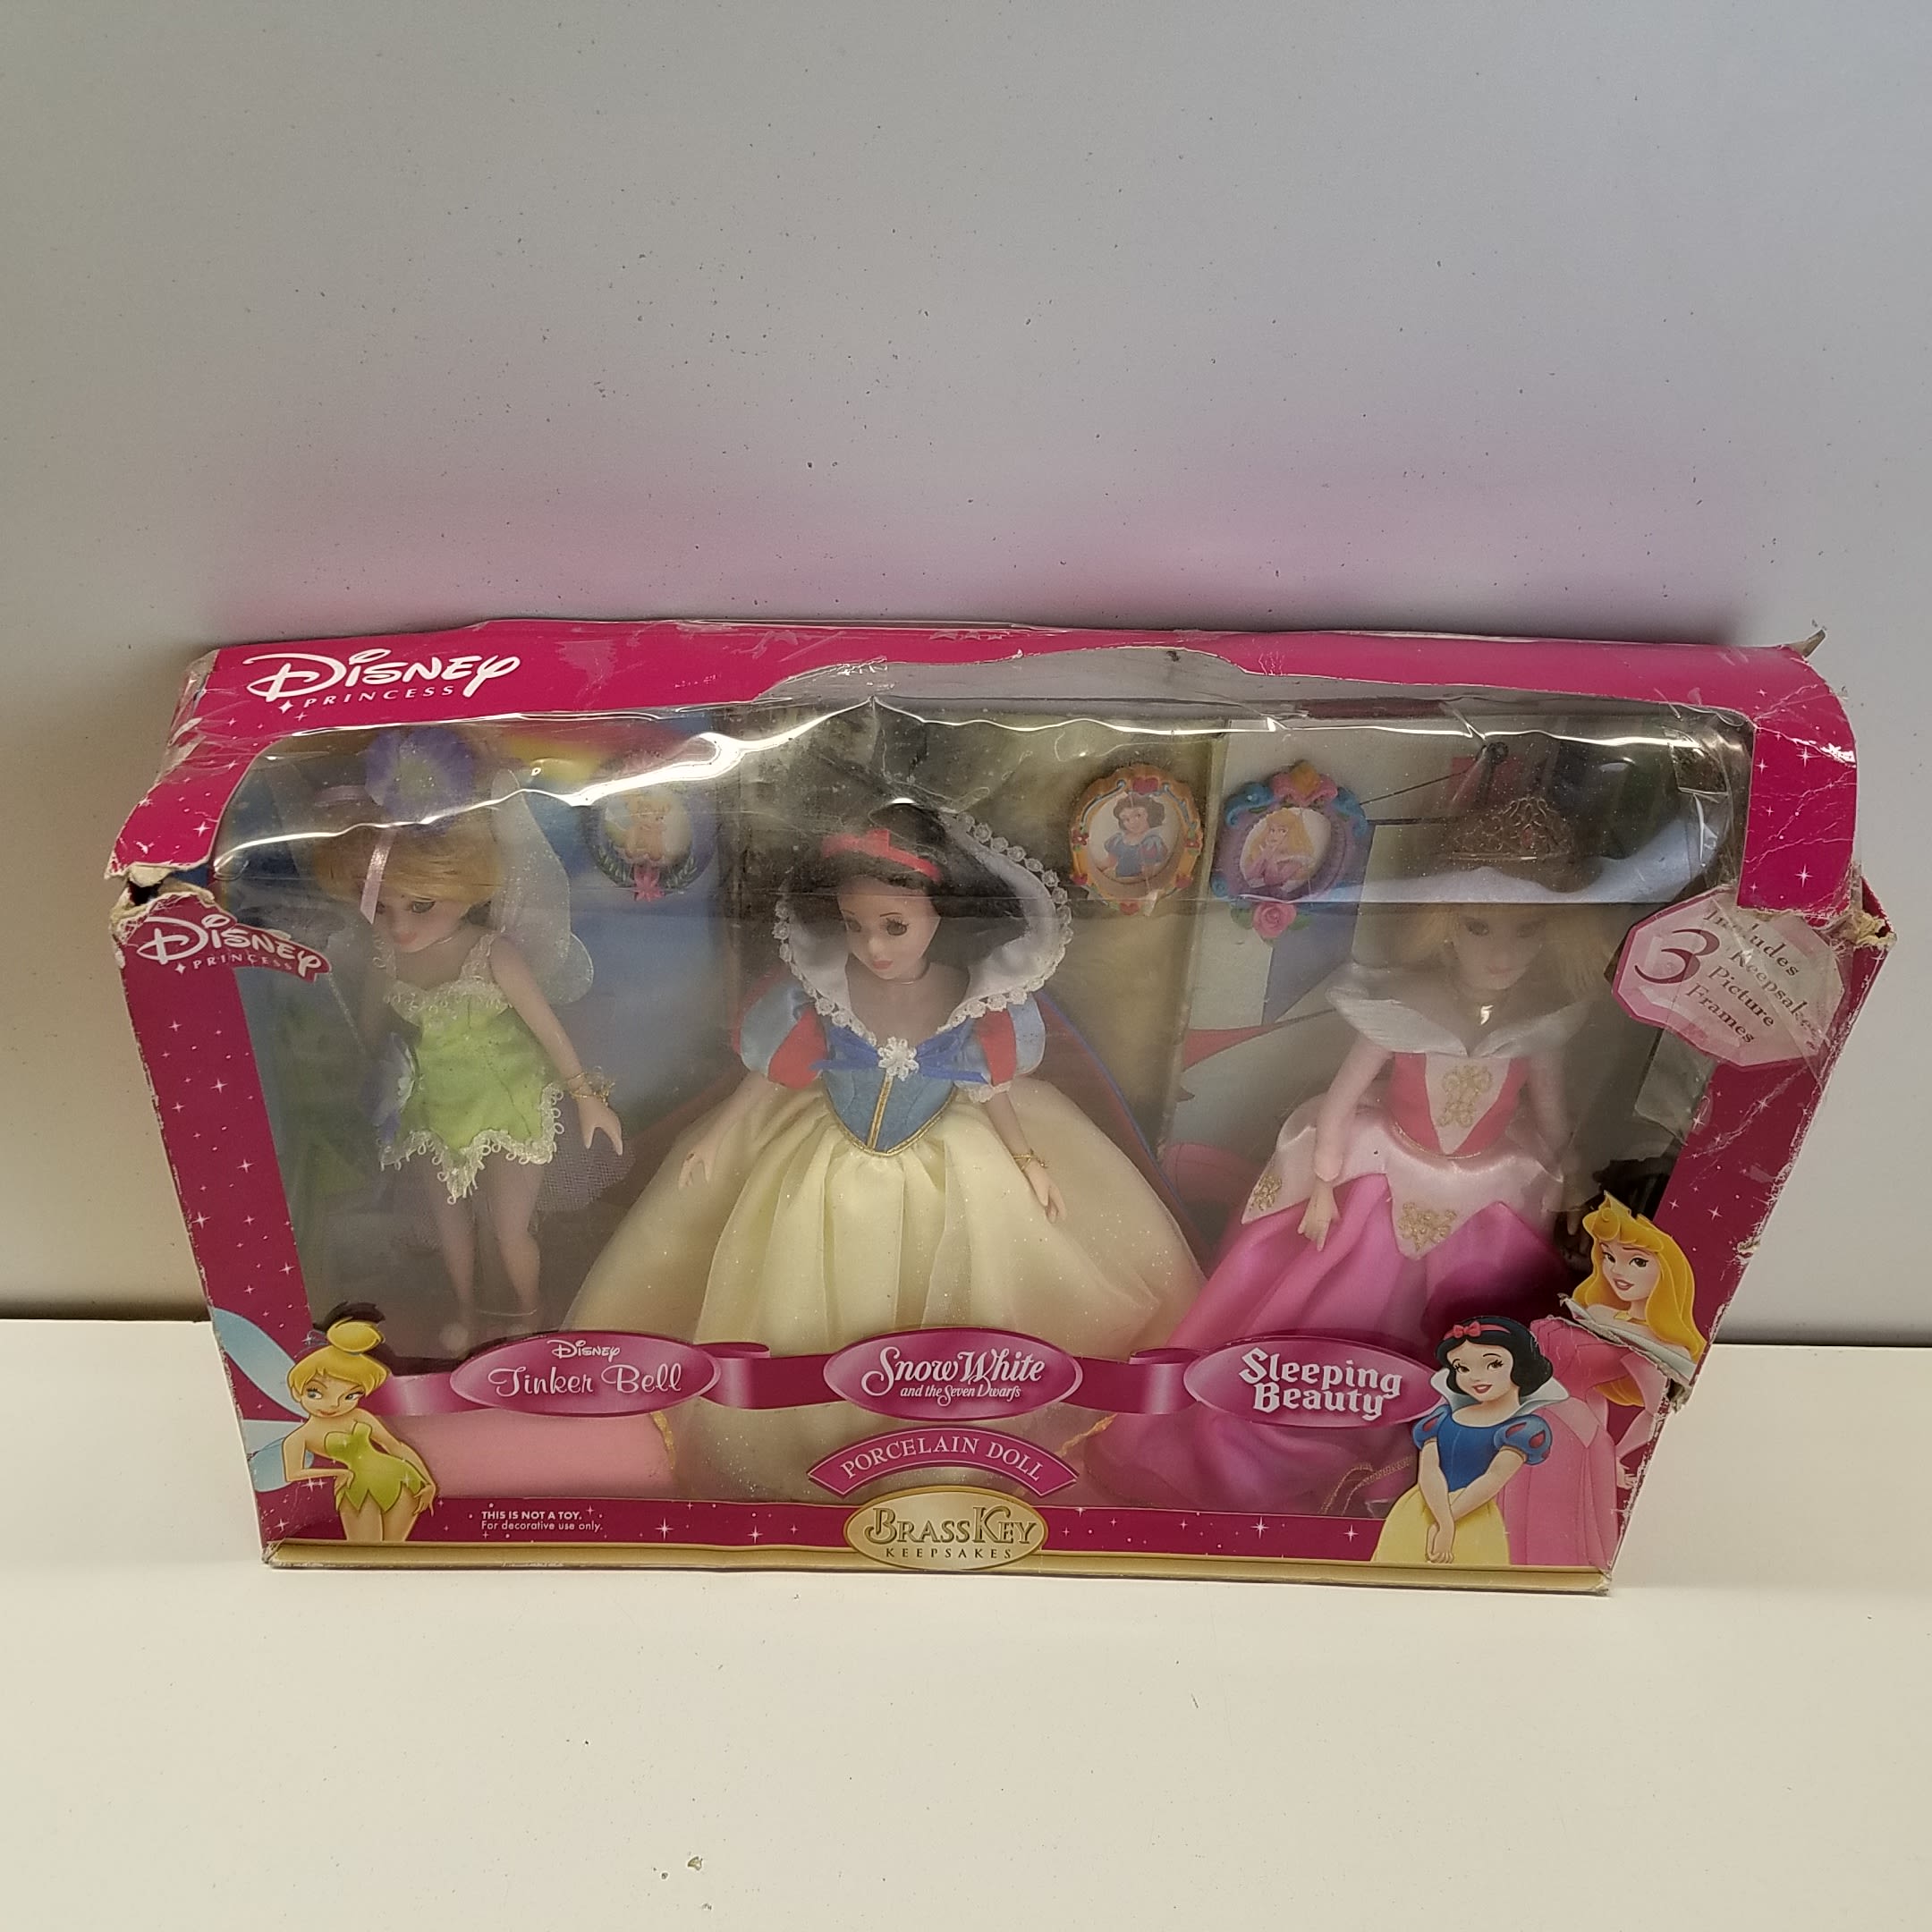 Buy the Disney Princess Brass Key Keepsakes Porcelain Dolls 779607